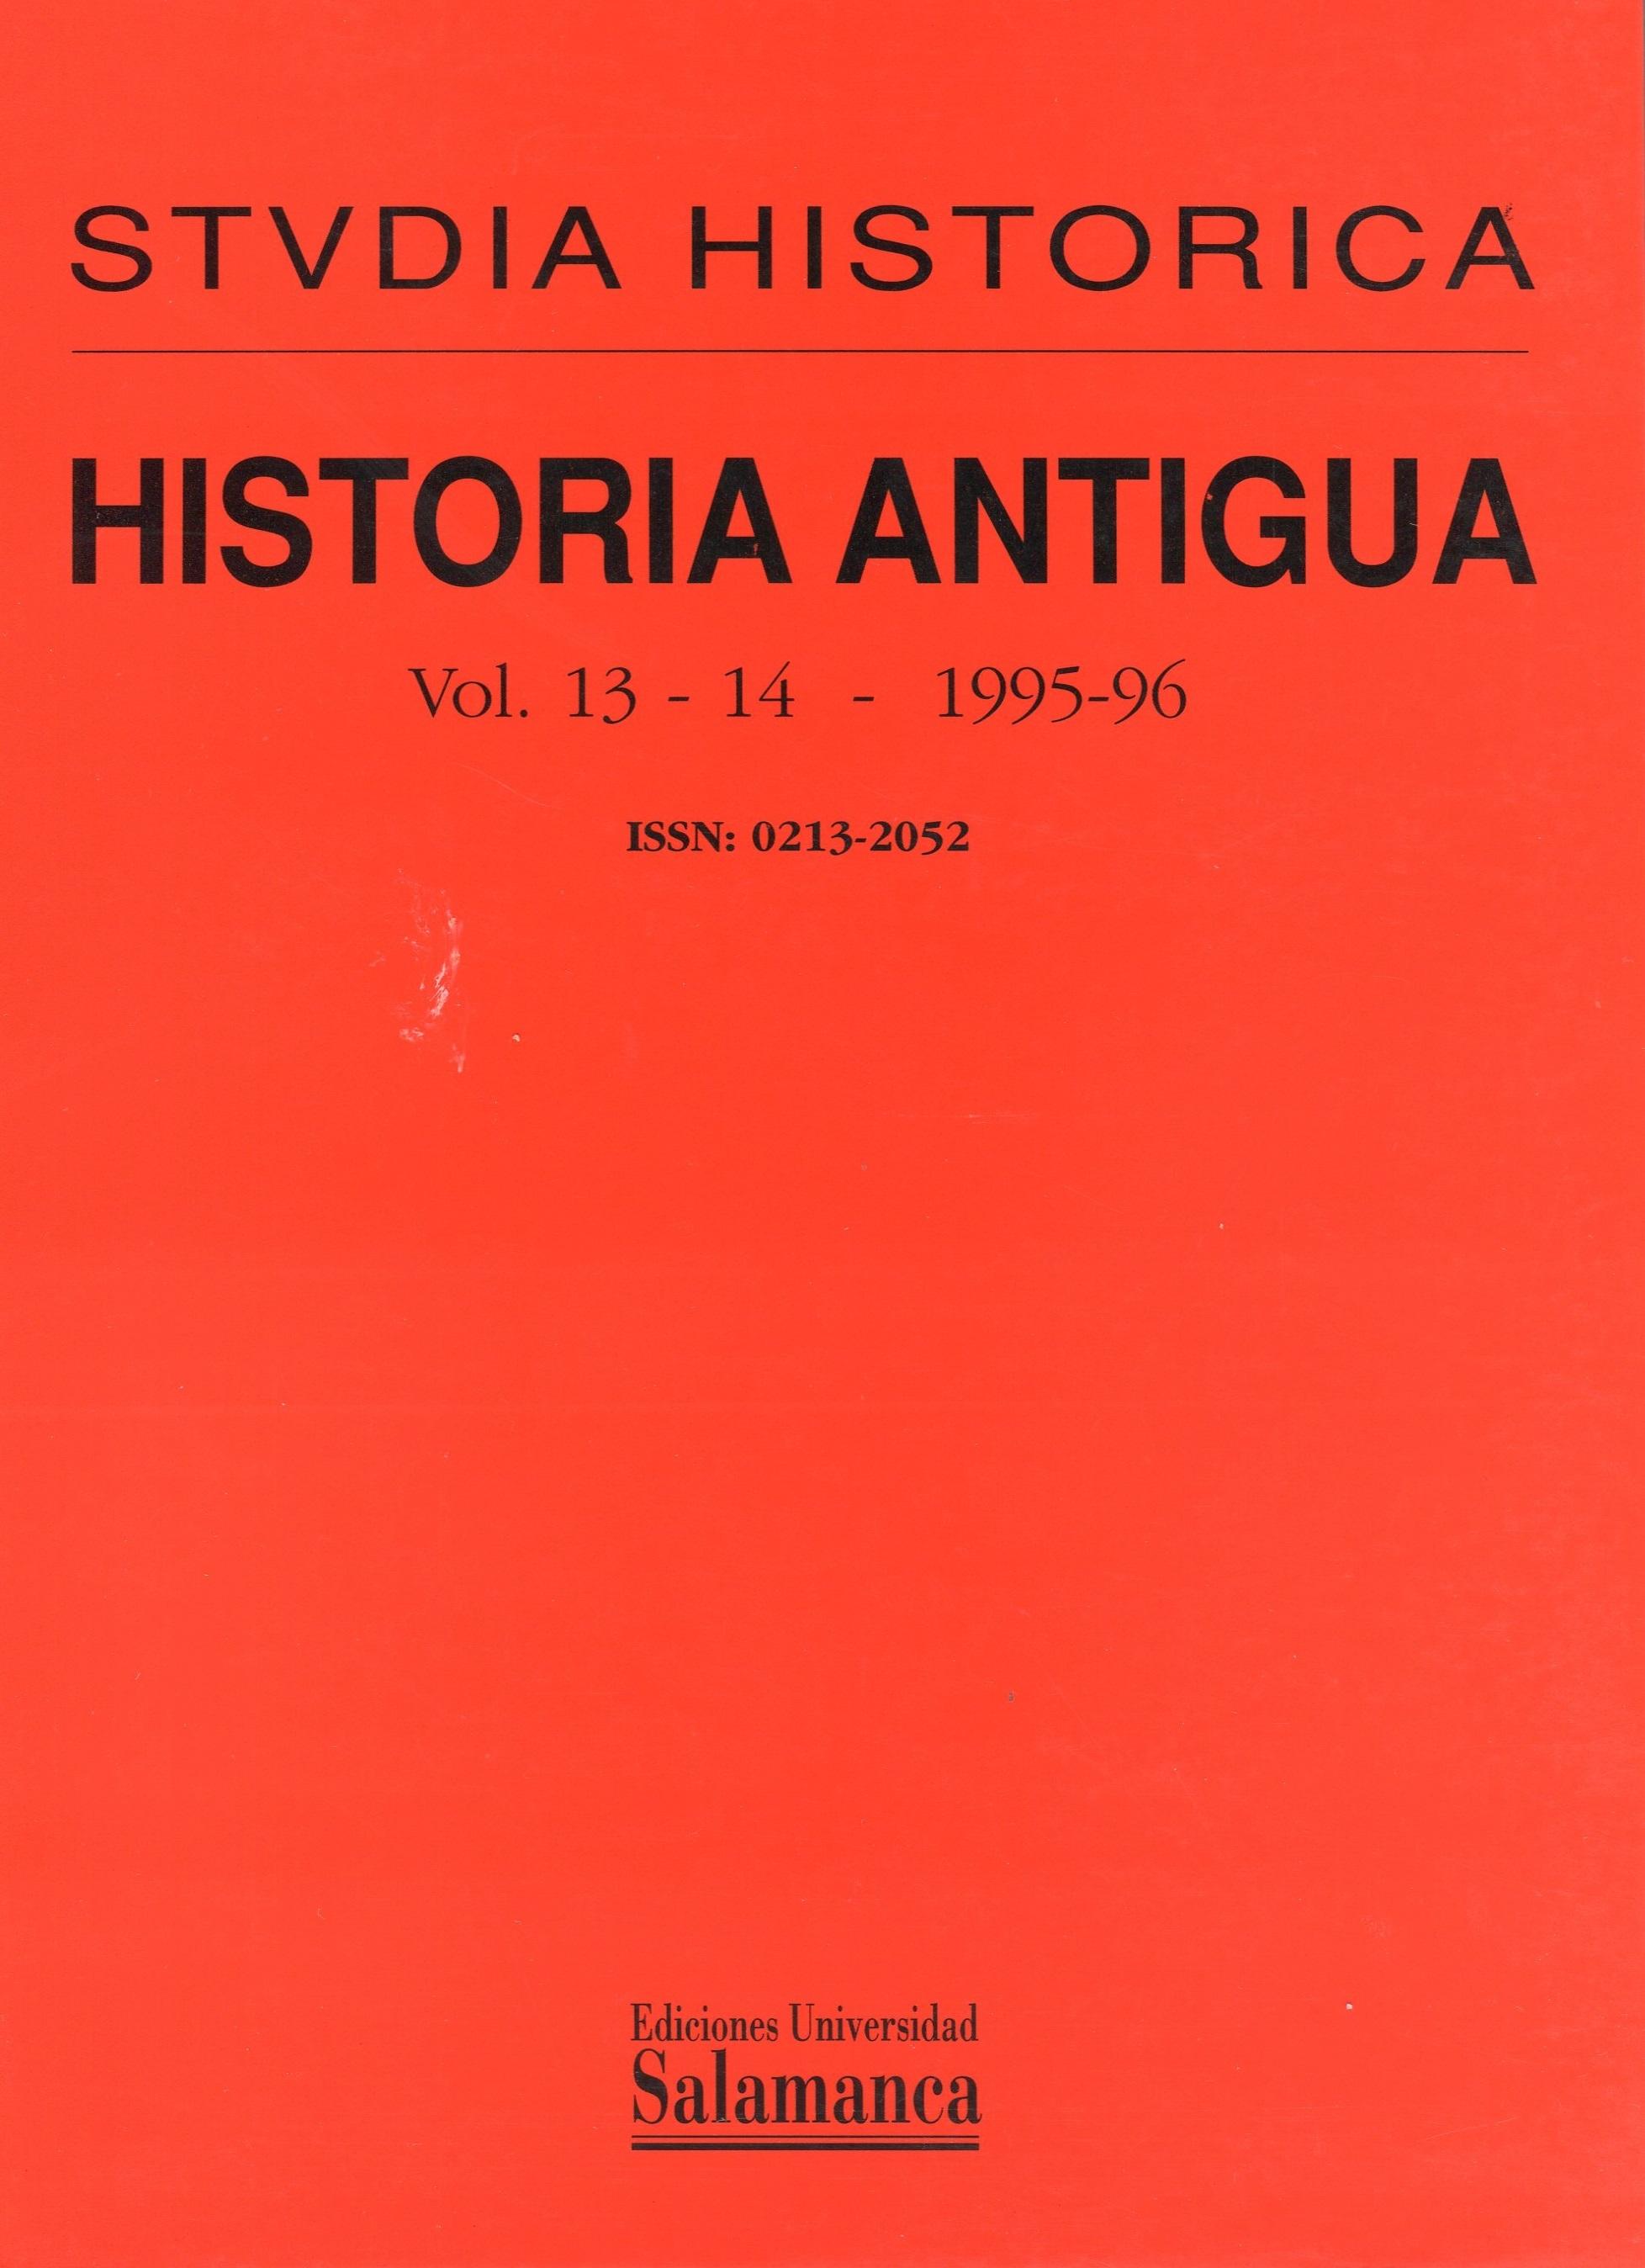 Historia Antigua. La Península Ibérica en la antigüedad: imagen de un territorio "Studia Historica. Vol. 13-14 - 1995-96"